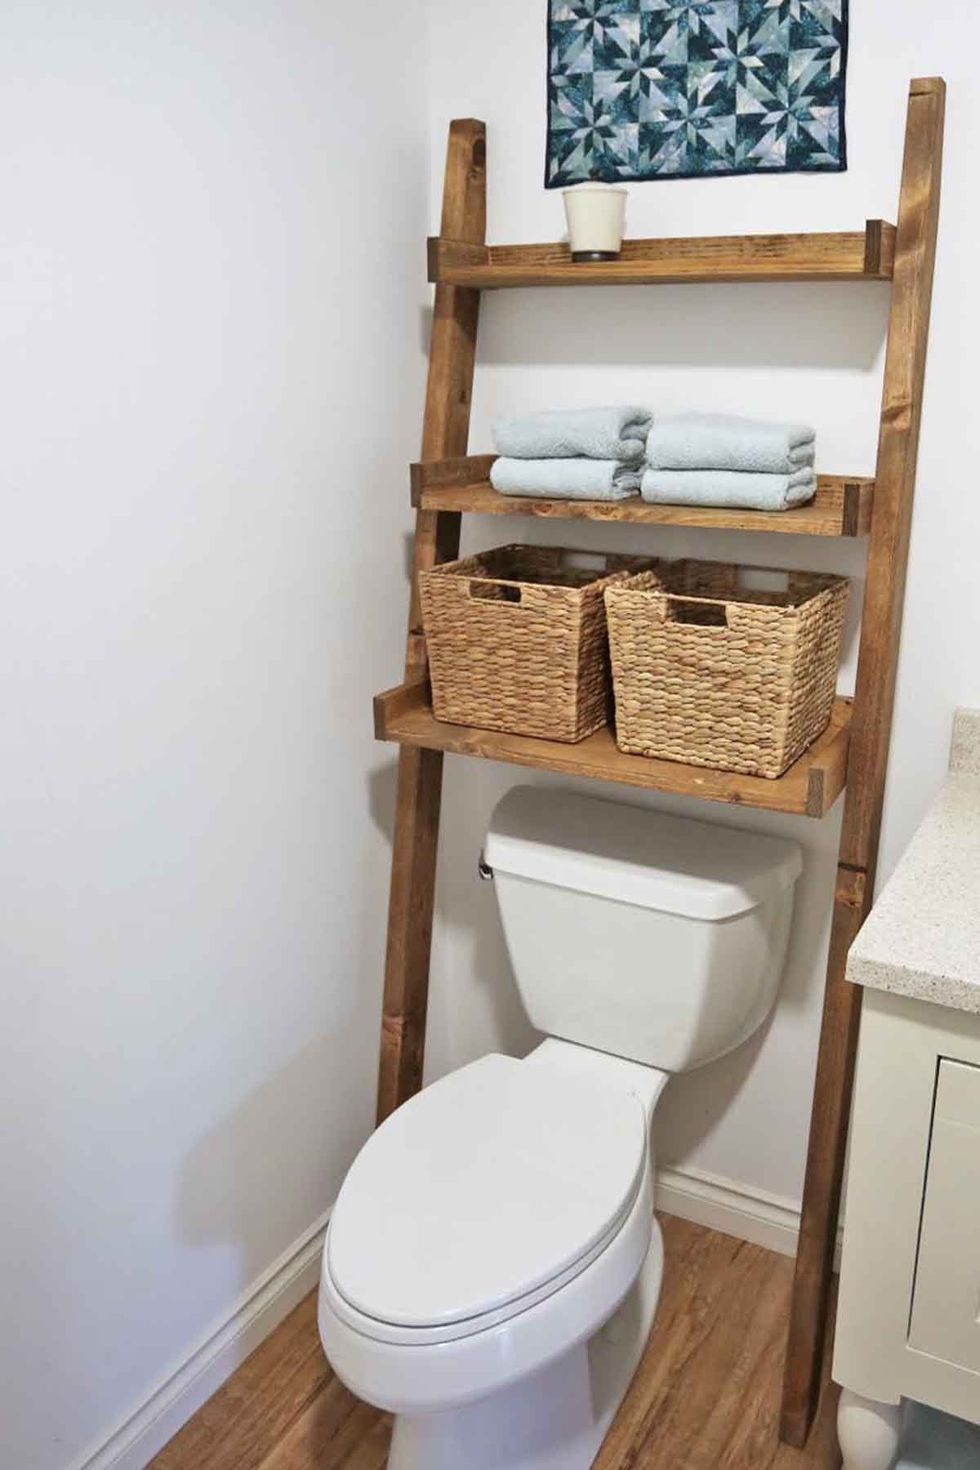 bathroom organization ideas ladder shelf